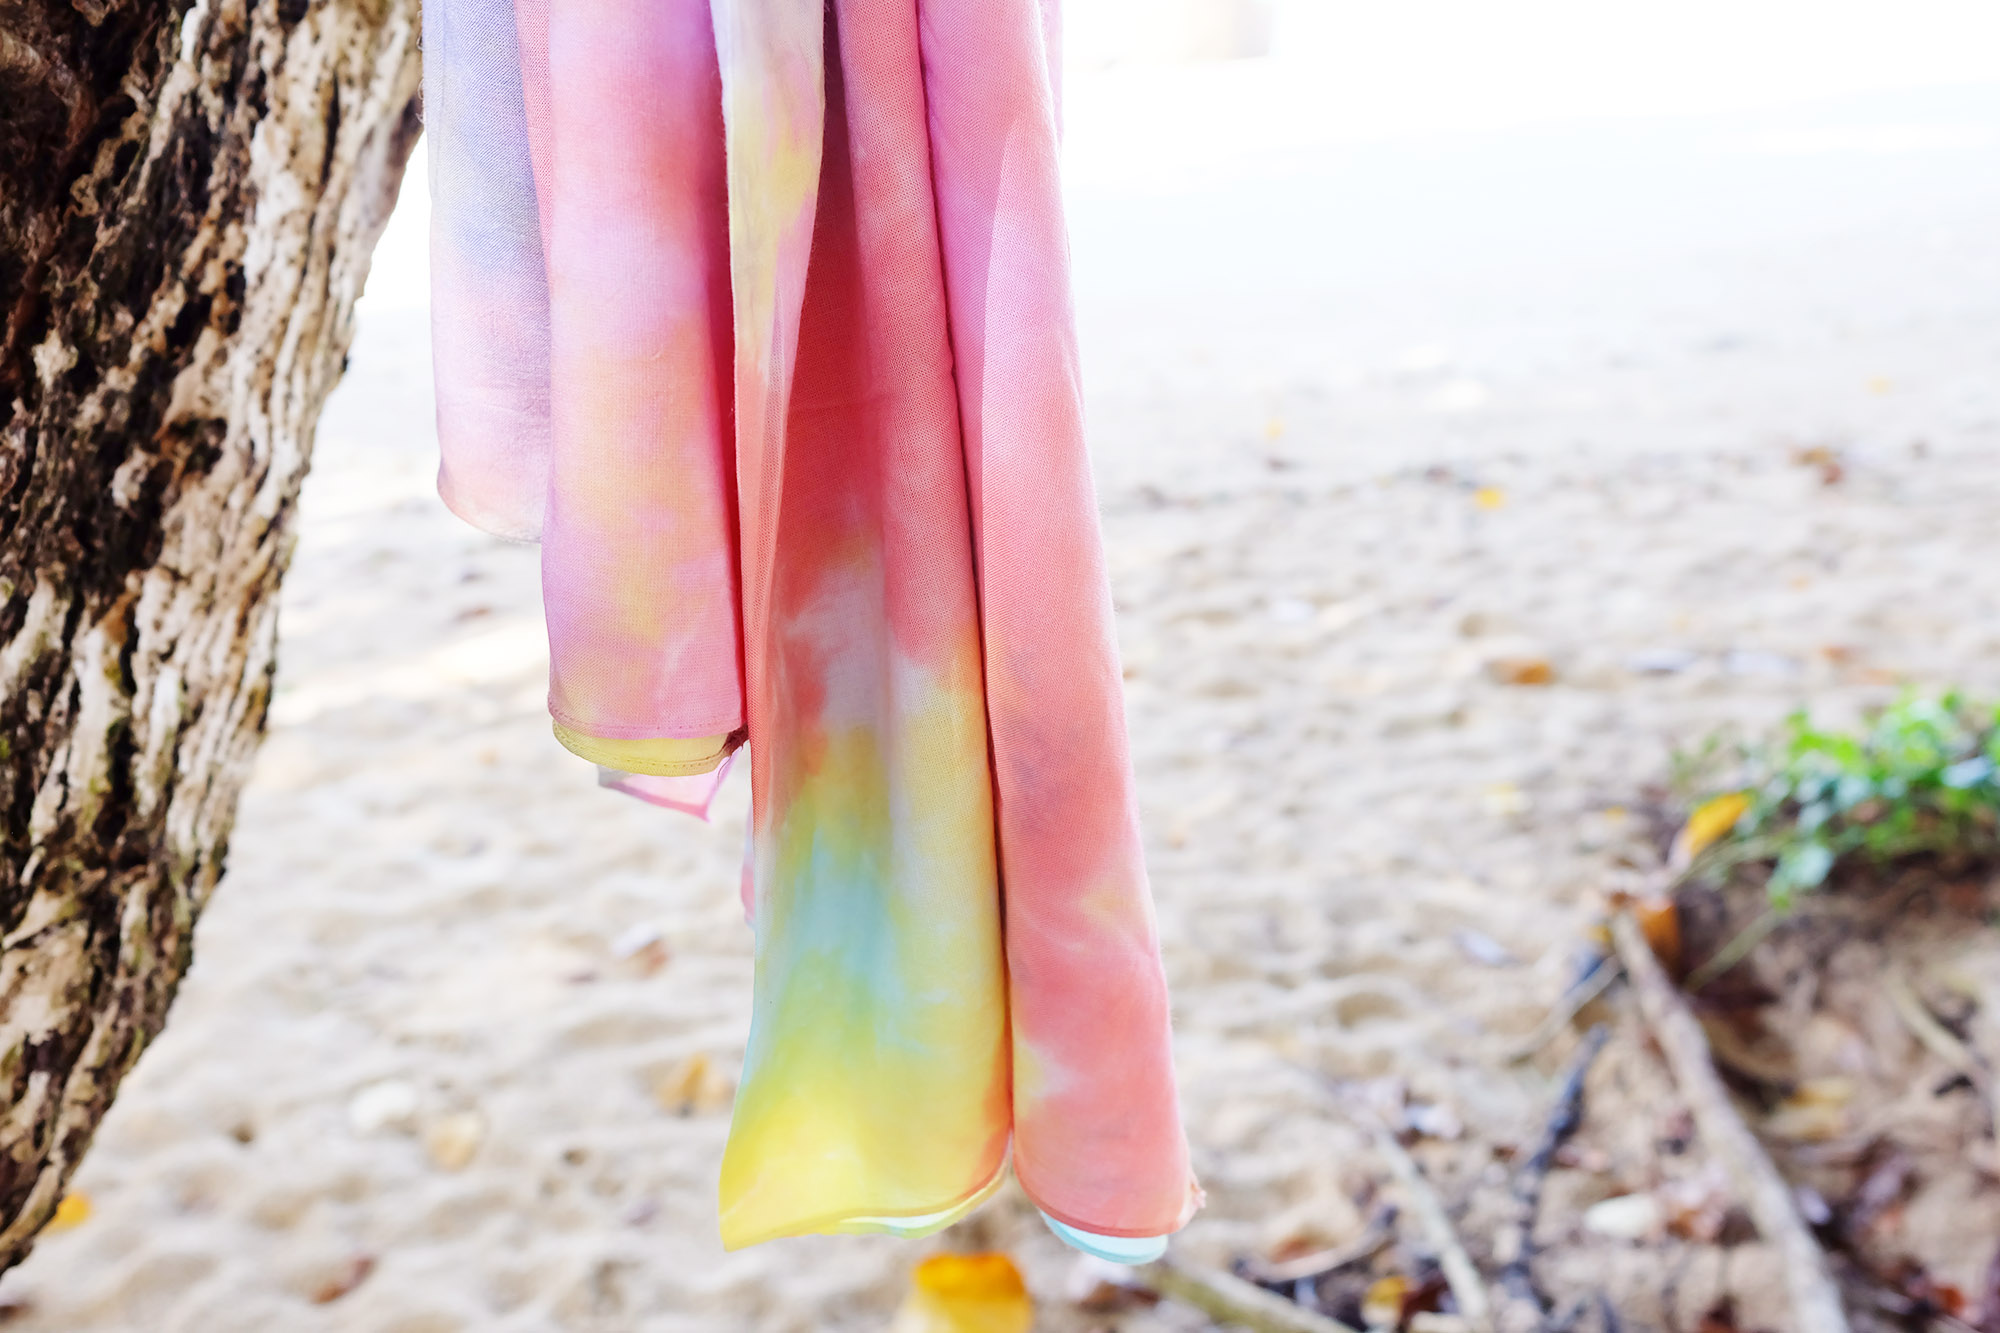 Mening solsikke Tilintetgøre Tie-dye/batik - Sådan kan det styles - Mode & Livsstil - Mitzie Mee Blog